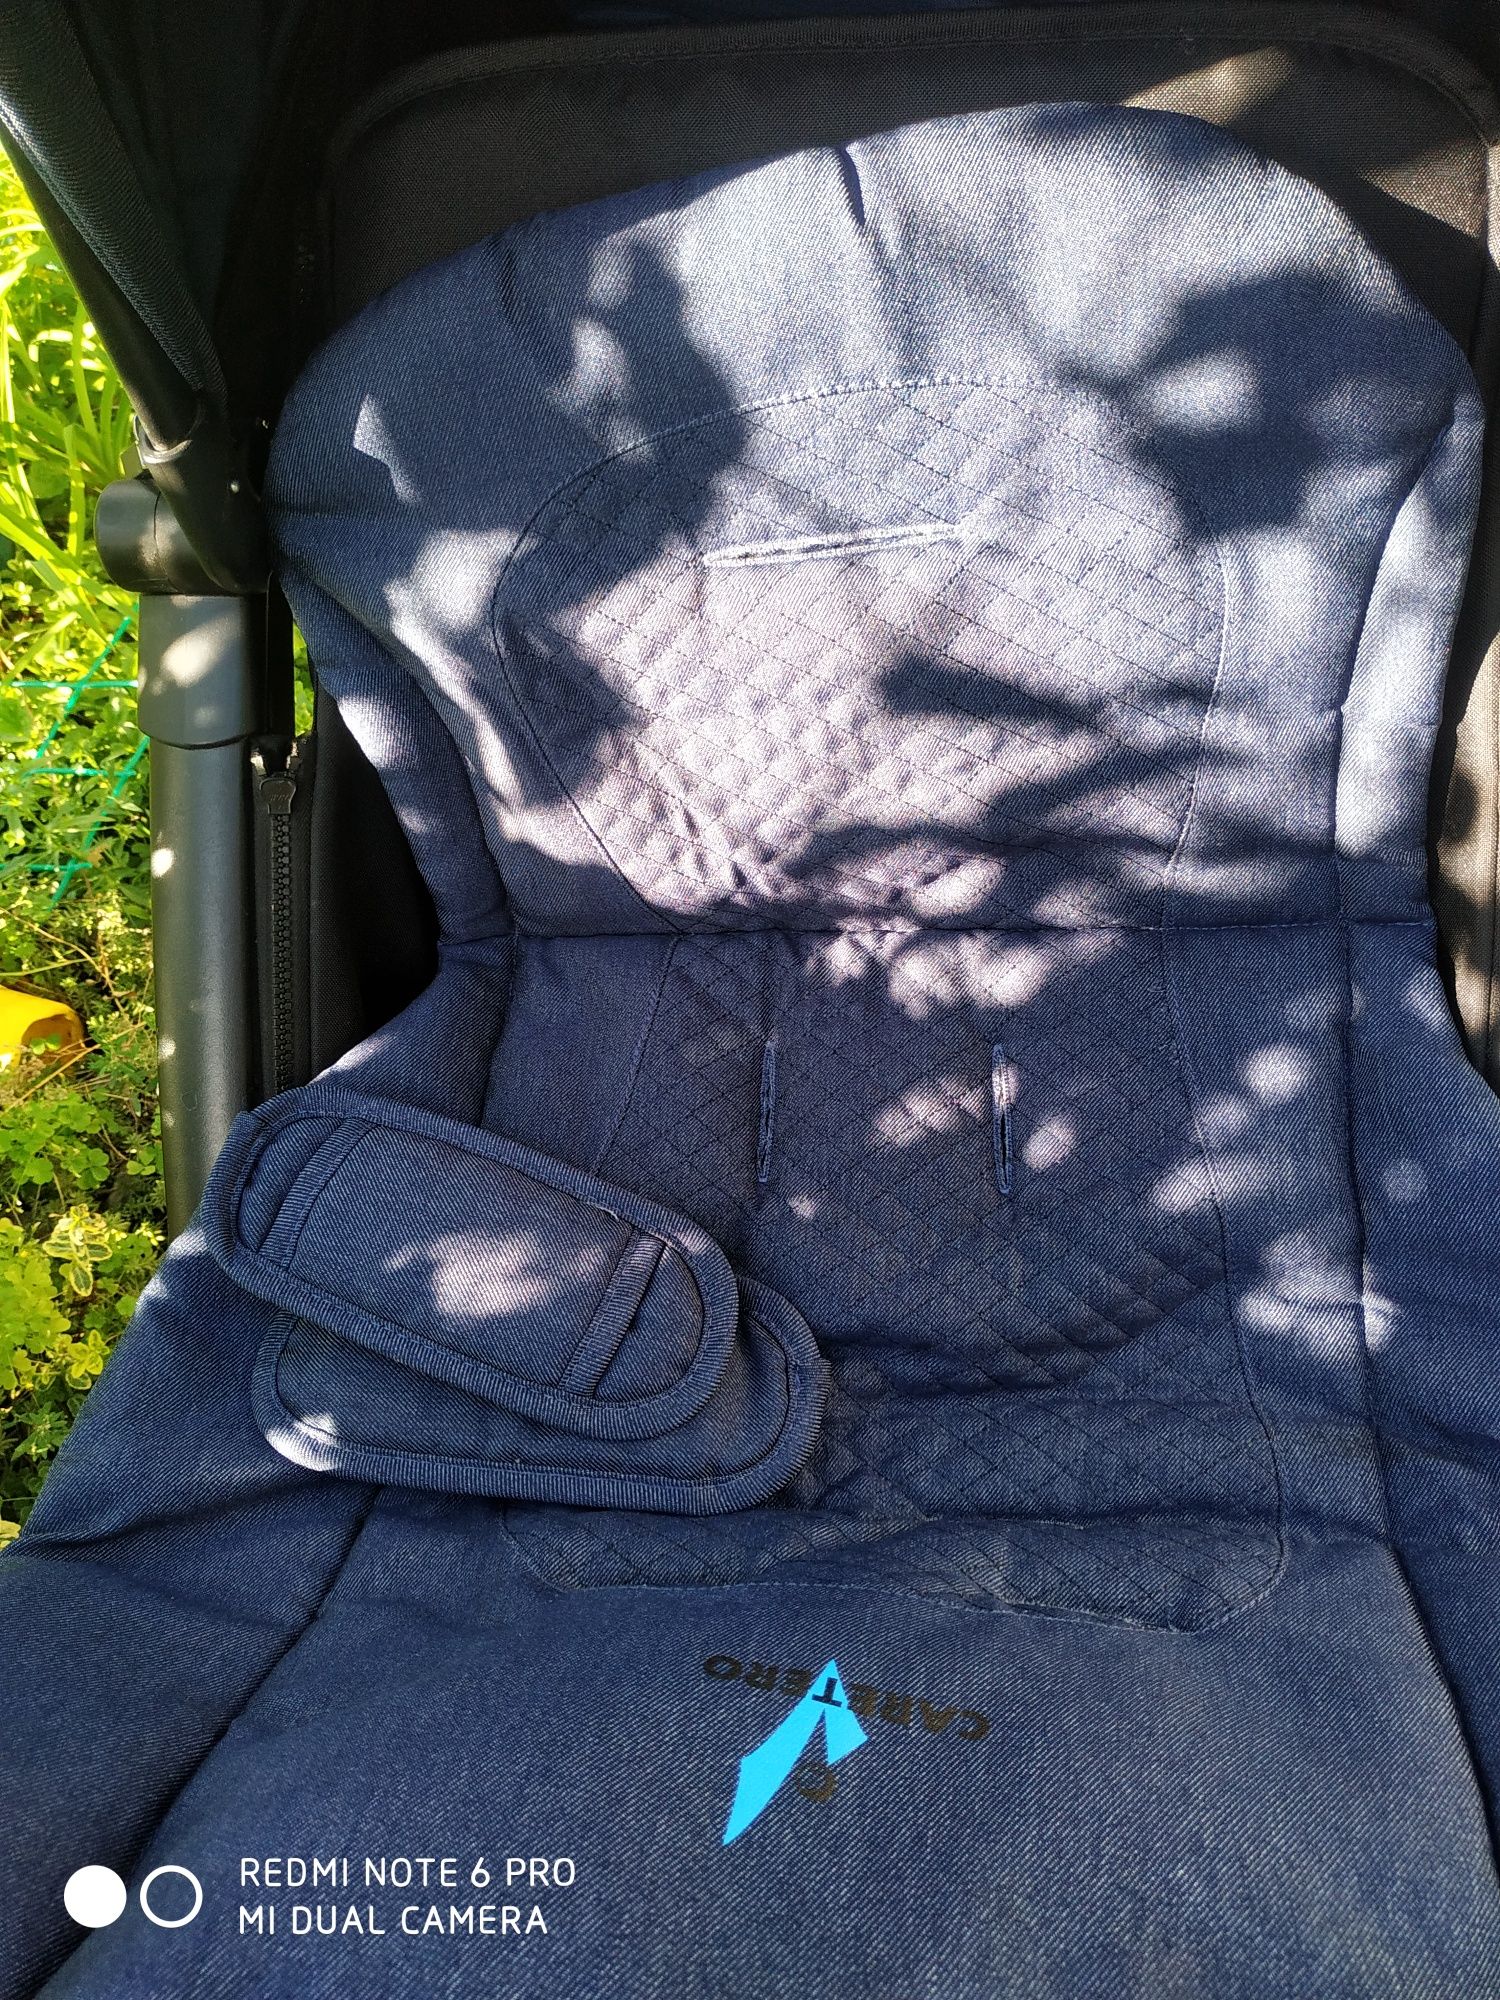 Прогулочная складная детская коляска Сaretero, синего цвета, под джинс